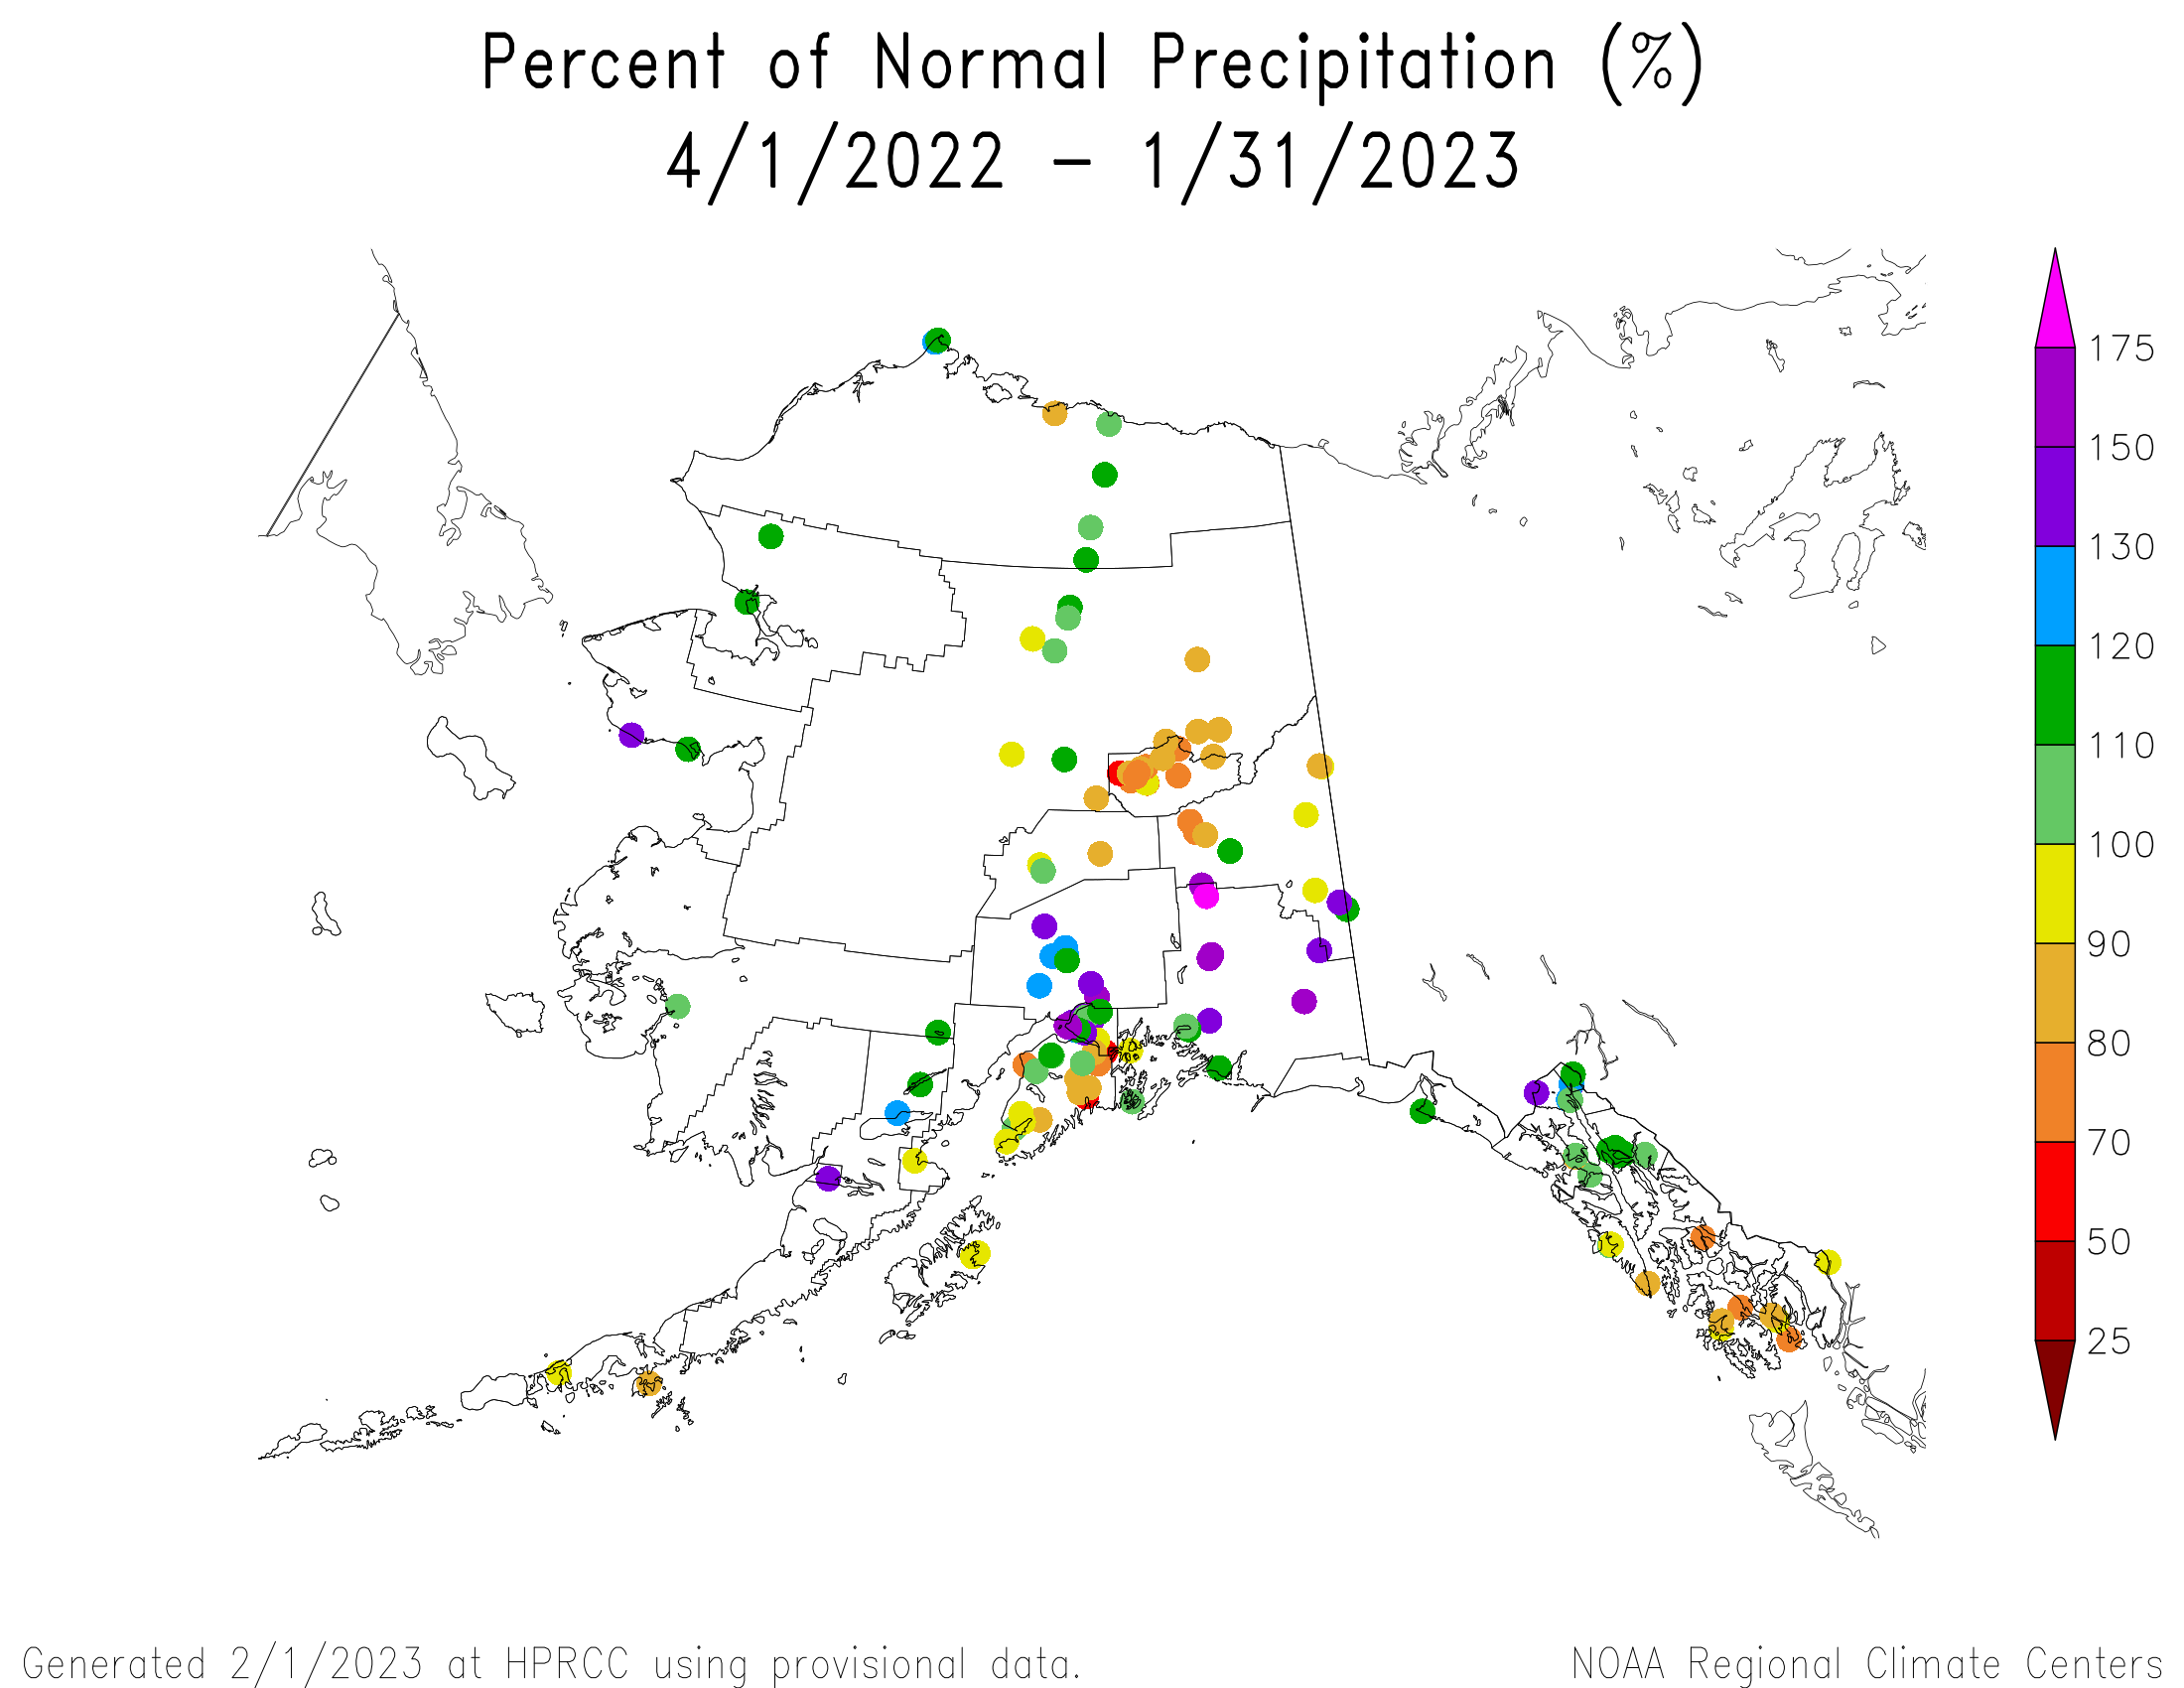 Alaska Percent of Normal Precipitation, April 2022-January 2023